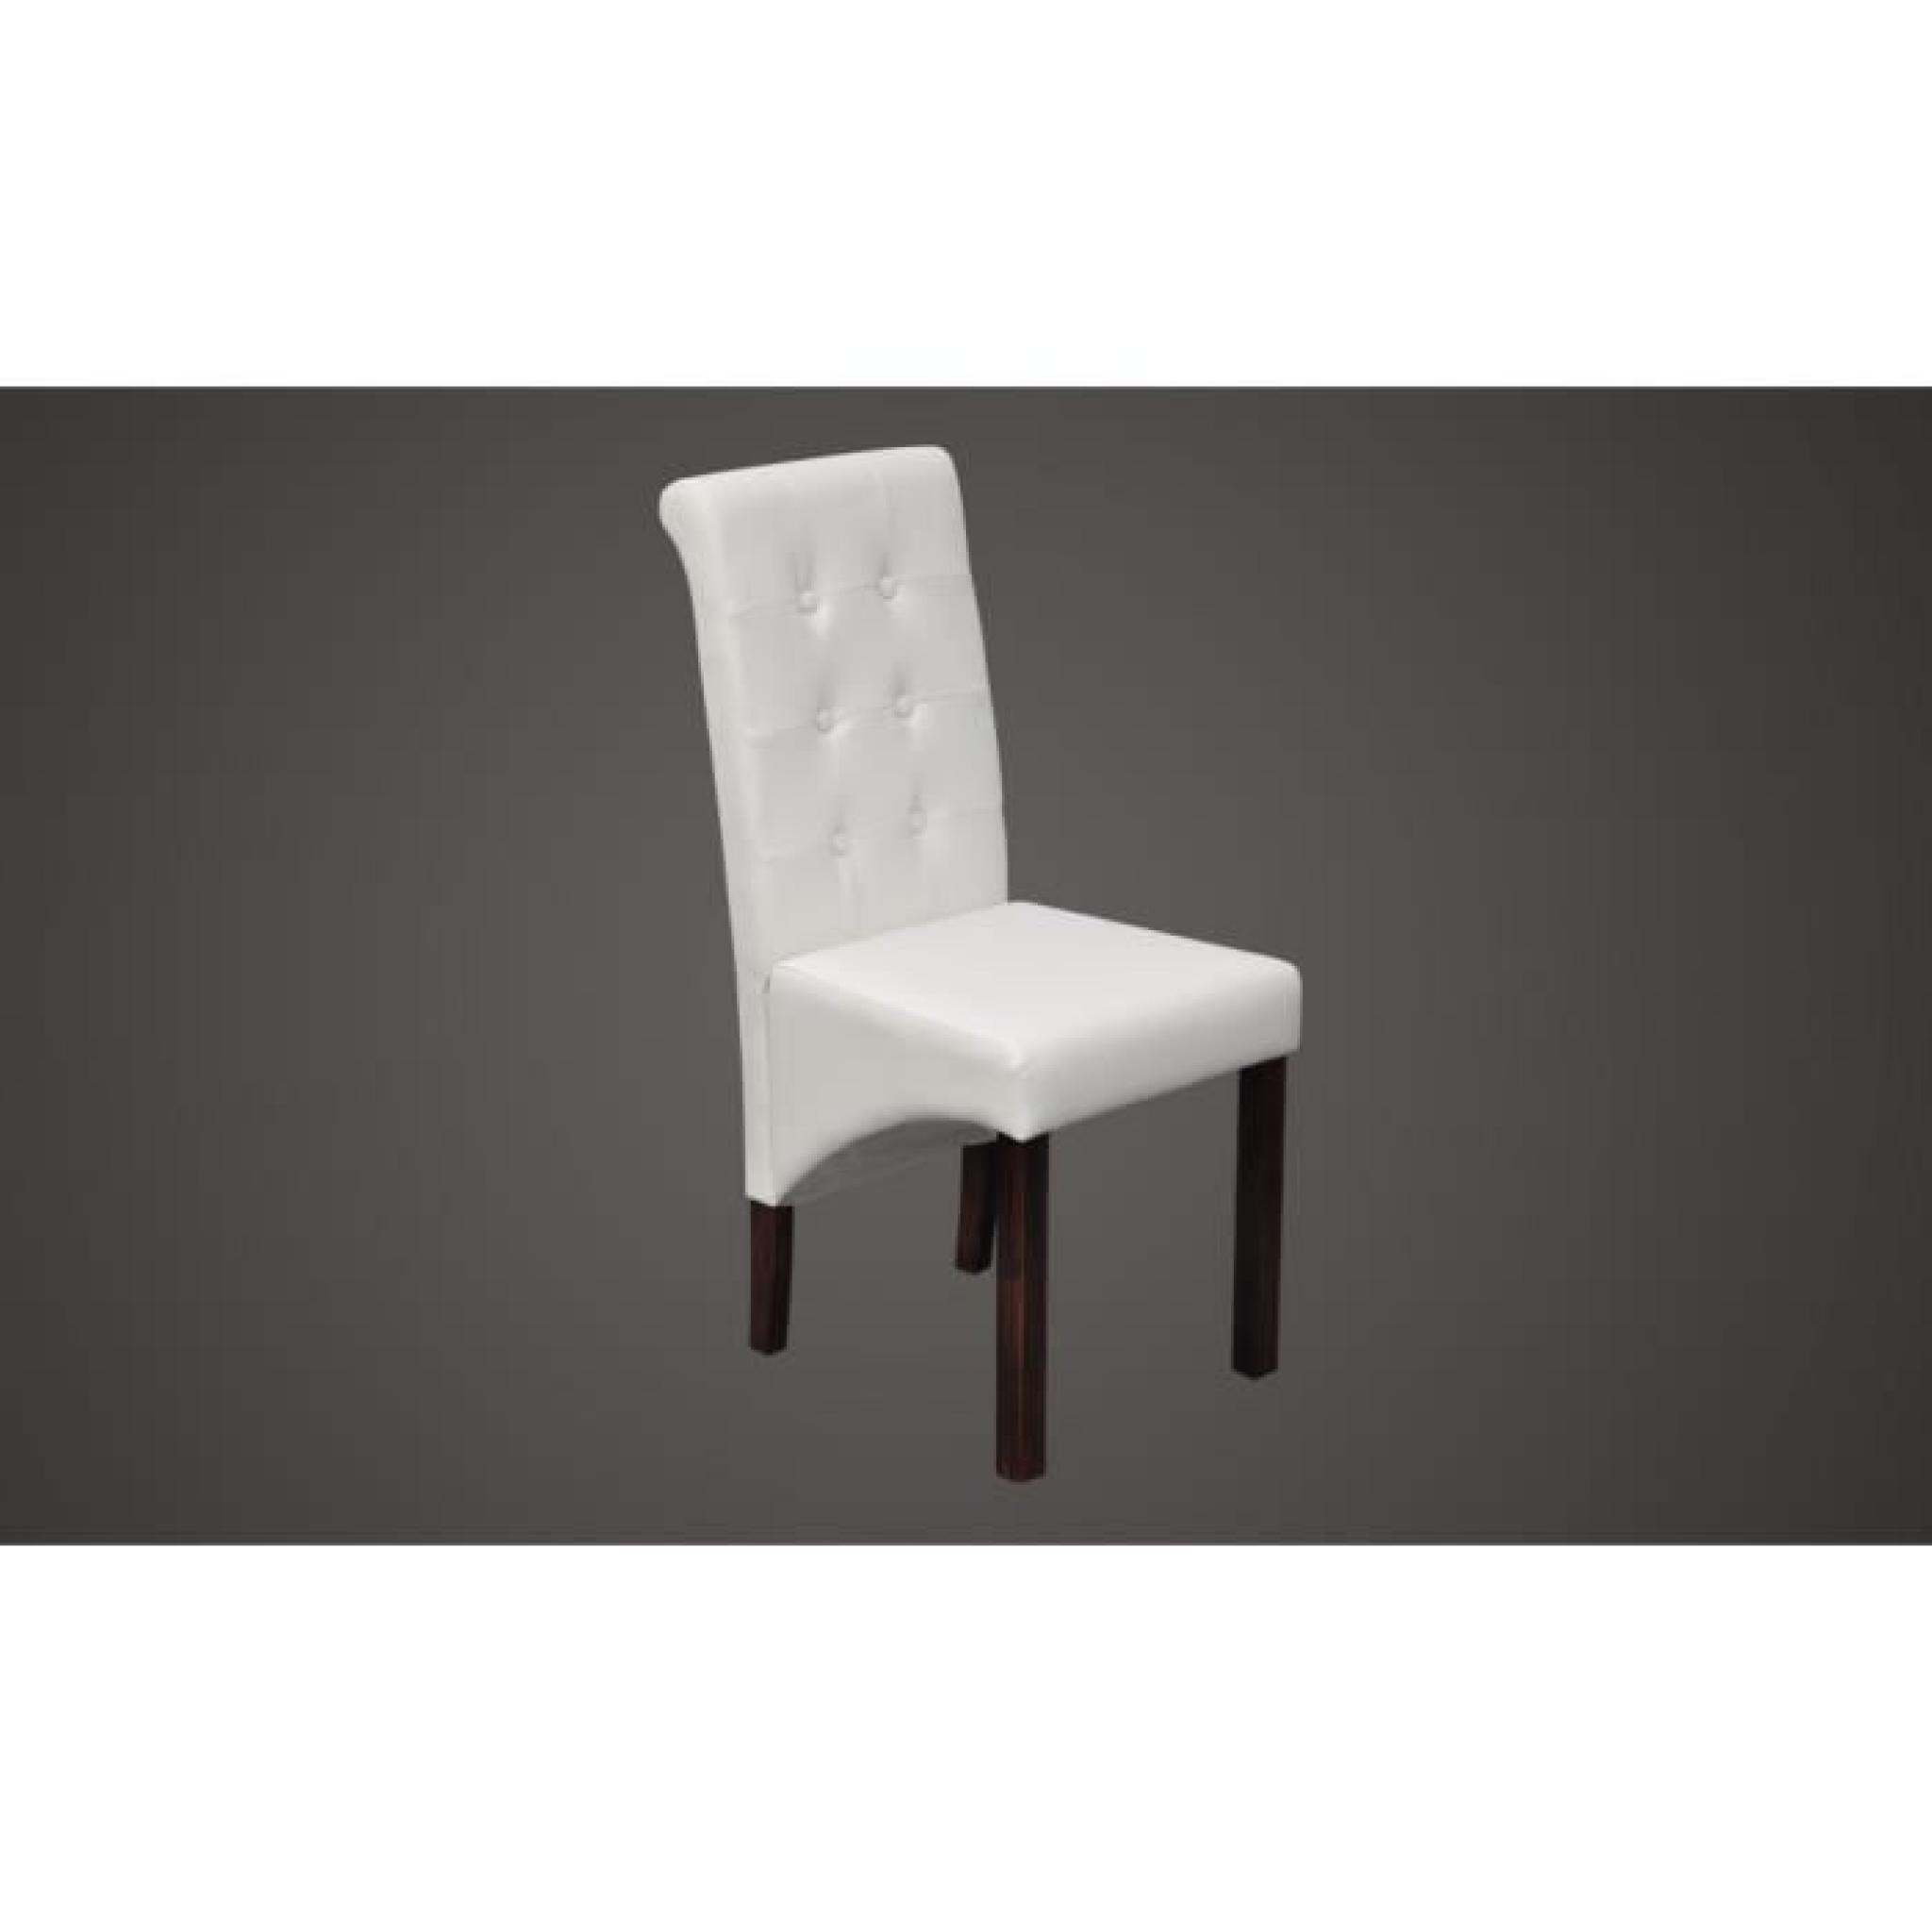 Chaise antique simili cuir blanc (lot de 6) pas cher